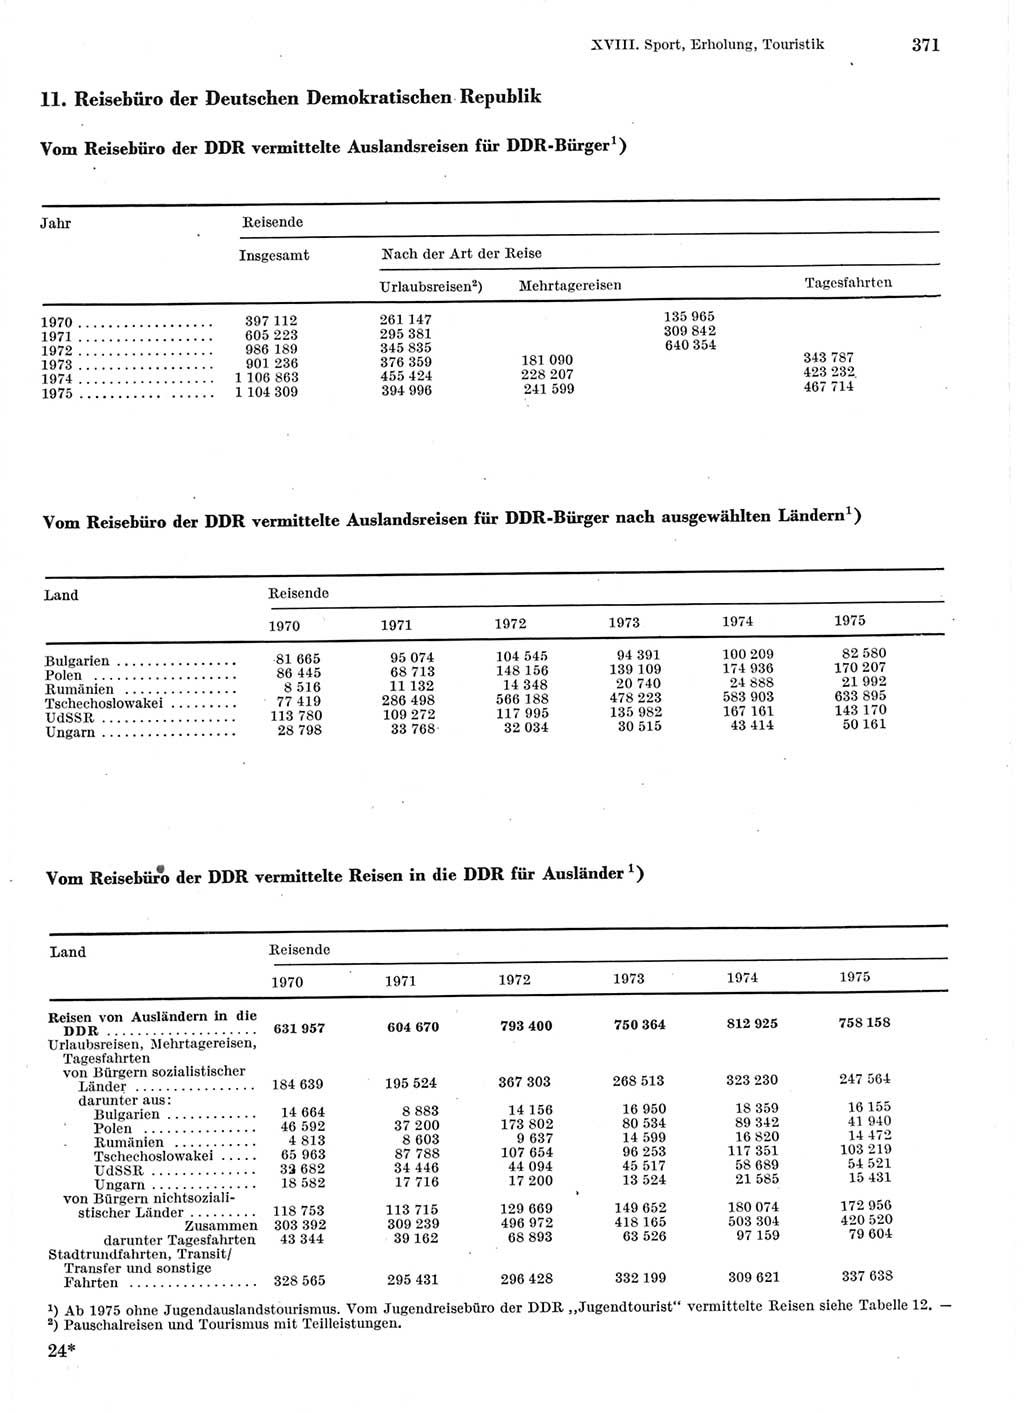 Statistisches Jahrbuch der Deutschen Demokratischen Republik (DDR) 1976, Seite 371 (Stat. Jb. DDR 1976, S. 371)